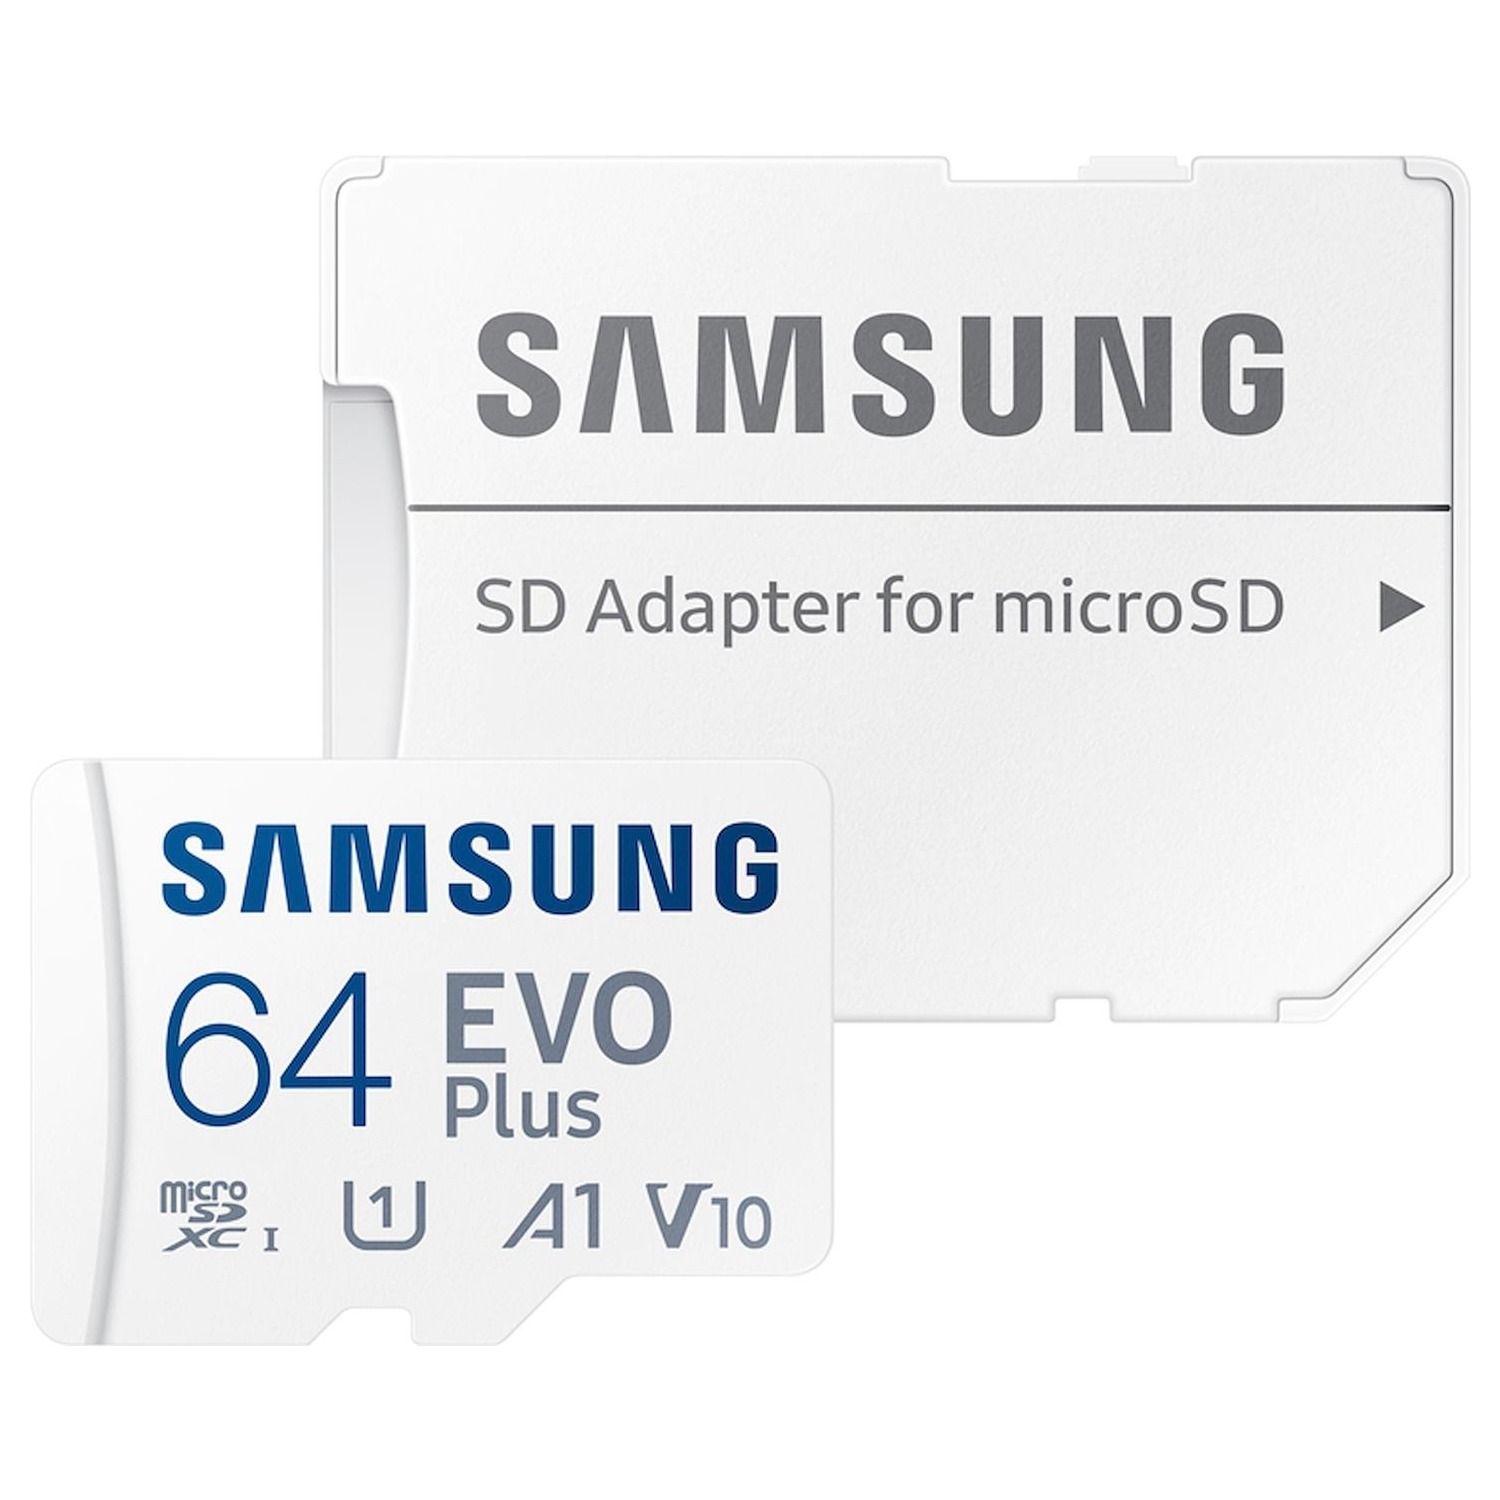 Immagine per MicroSd Samsung 64GB da DIMOStore